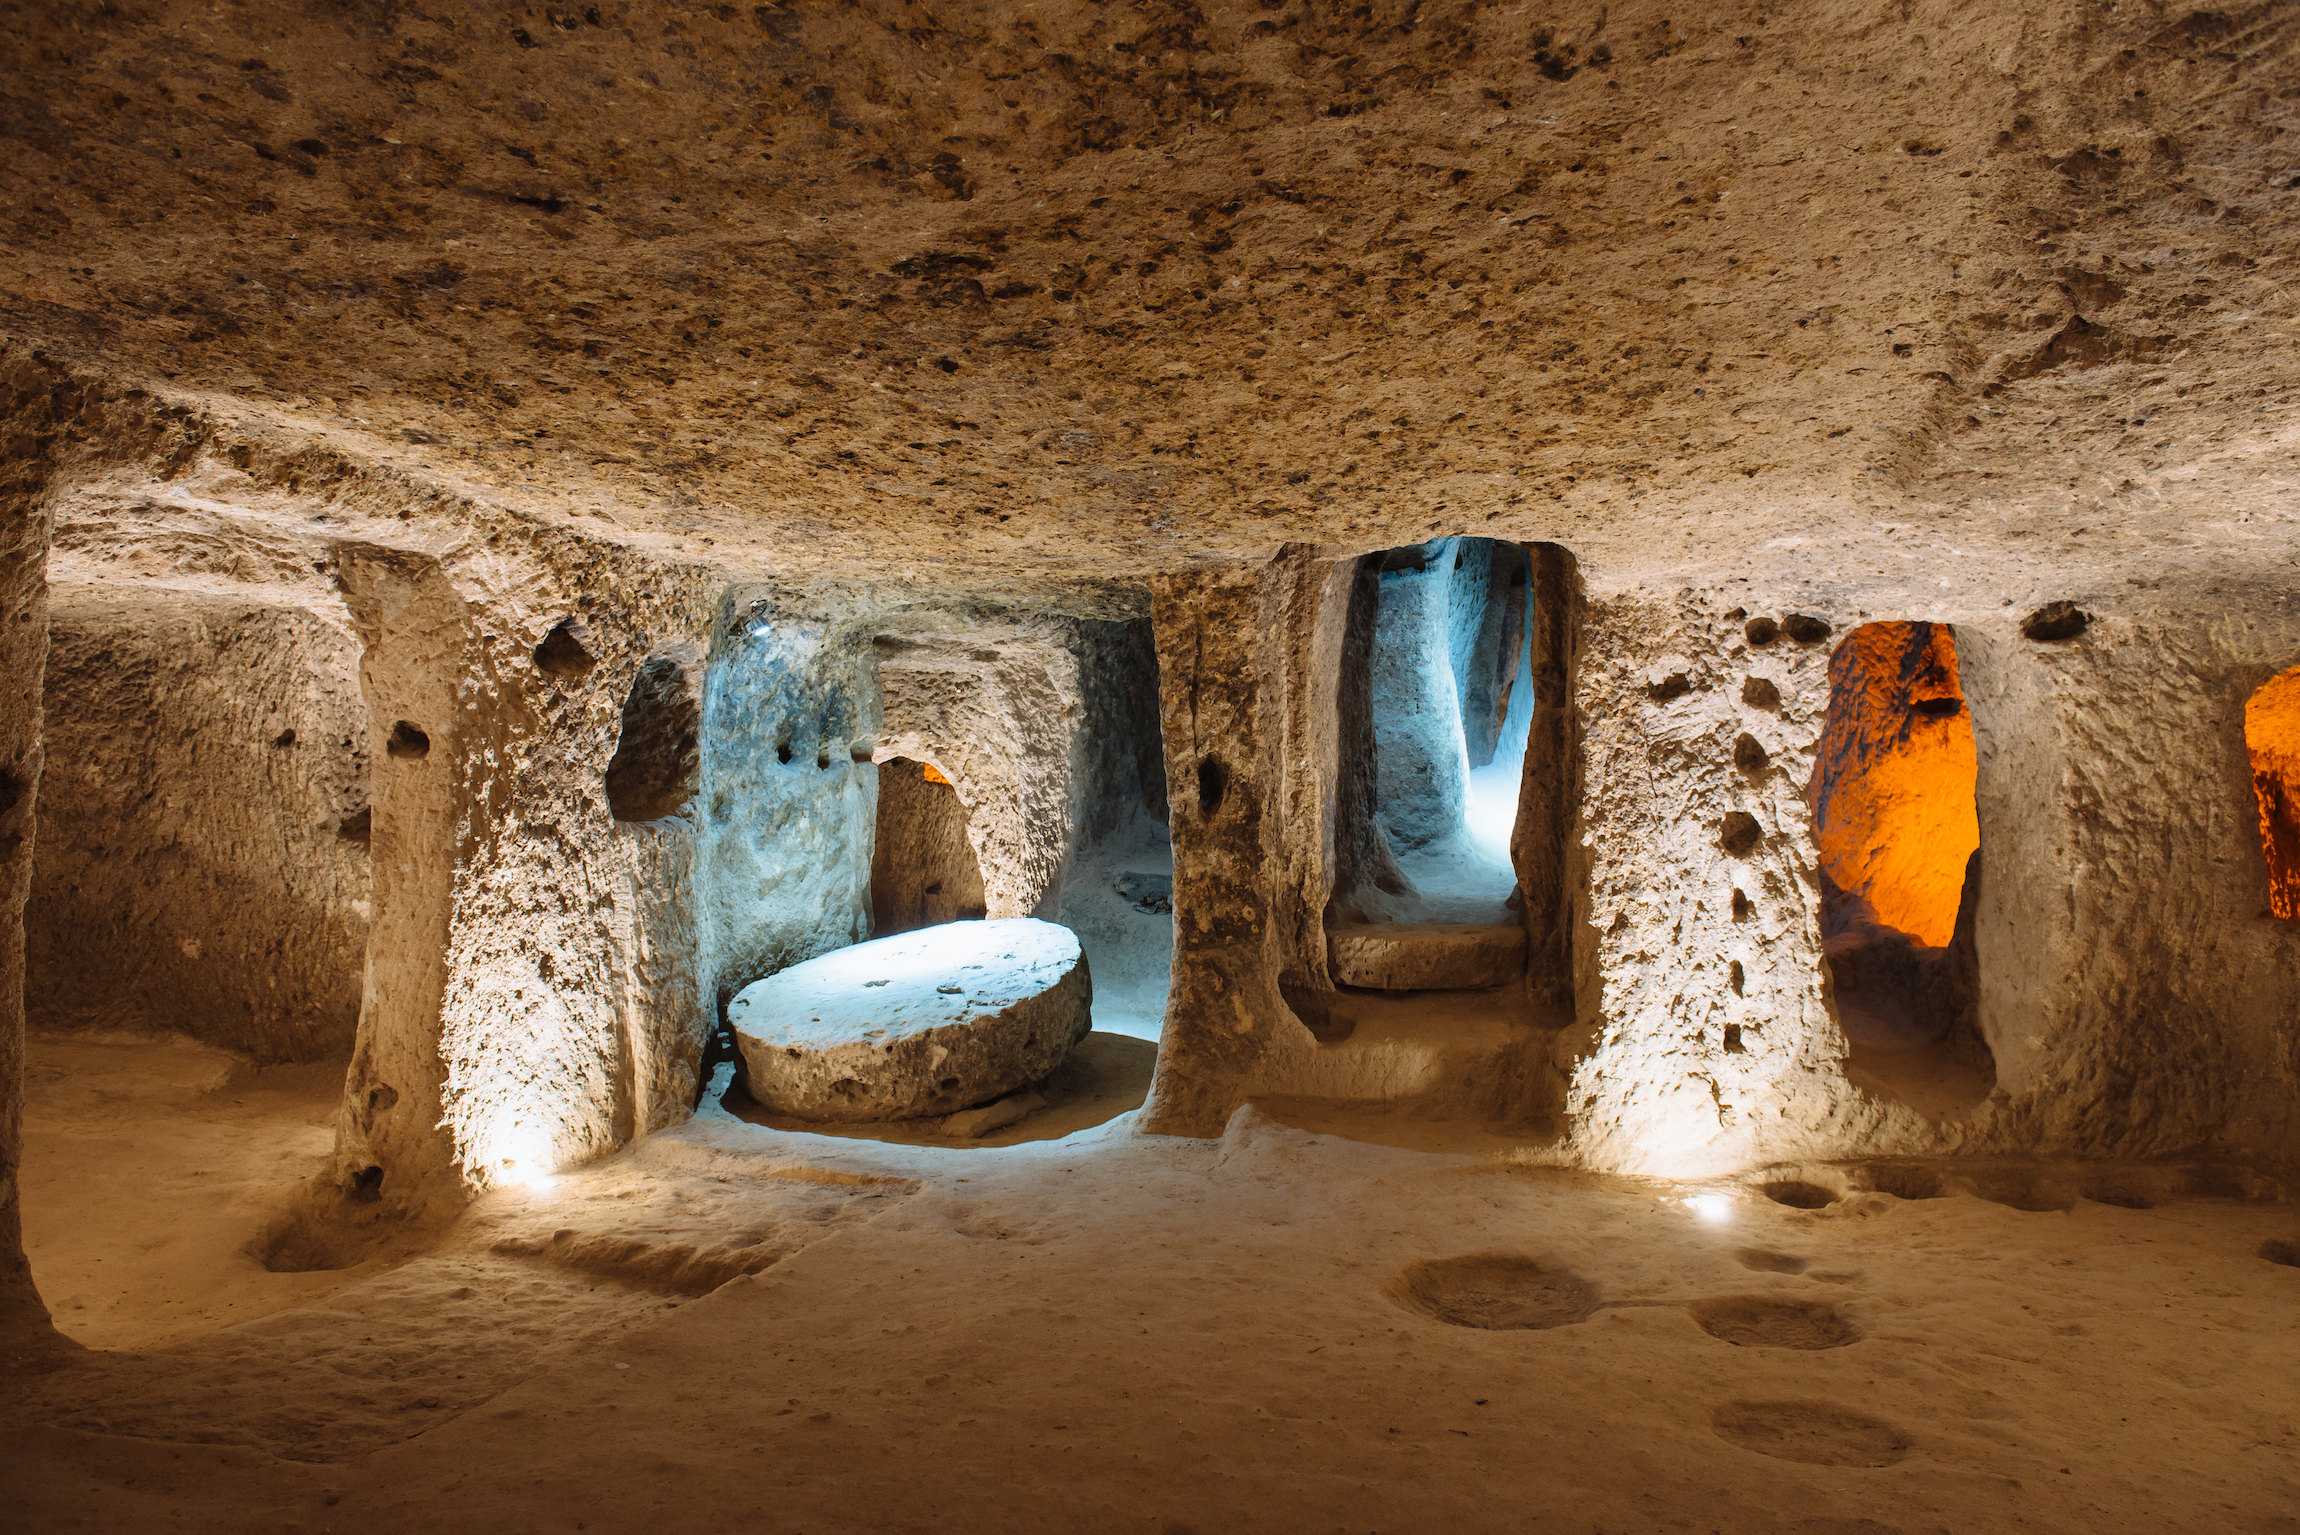 Kapadocja - Podziemne miasto Derinkuyu to starożytne wielopoziomowe miasto jaskiniowe w Kapadocji w Turcji. Kamień używany jako drzwi w starym podziemnym mieście